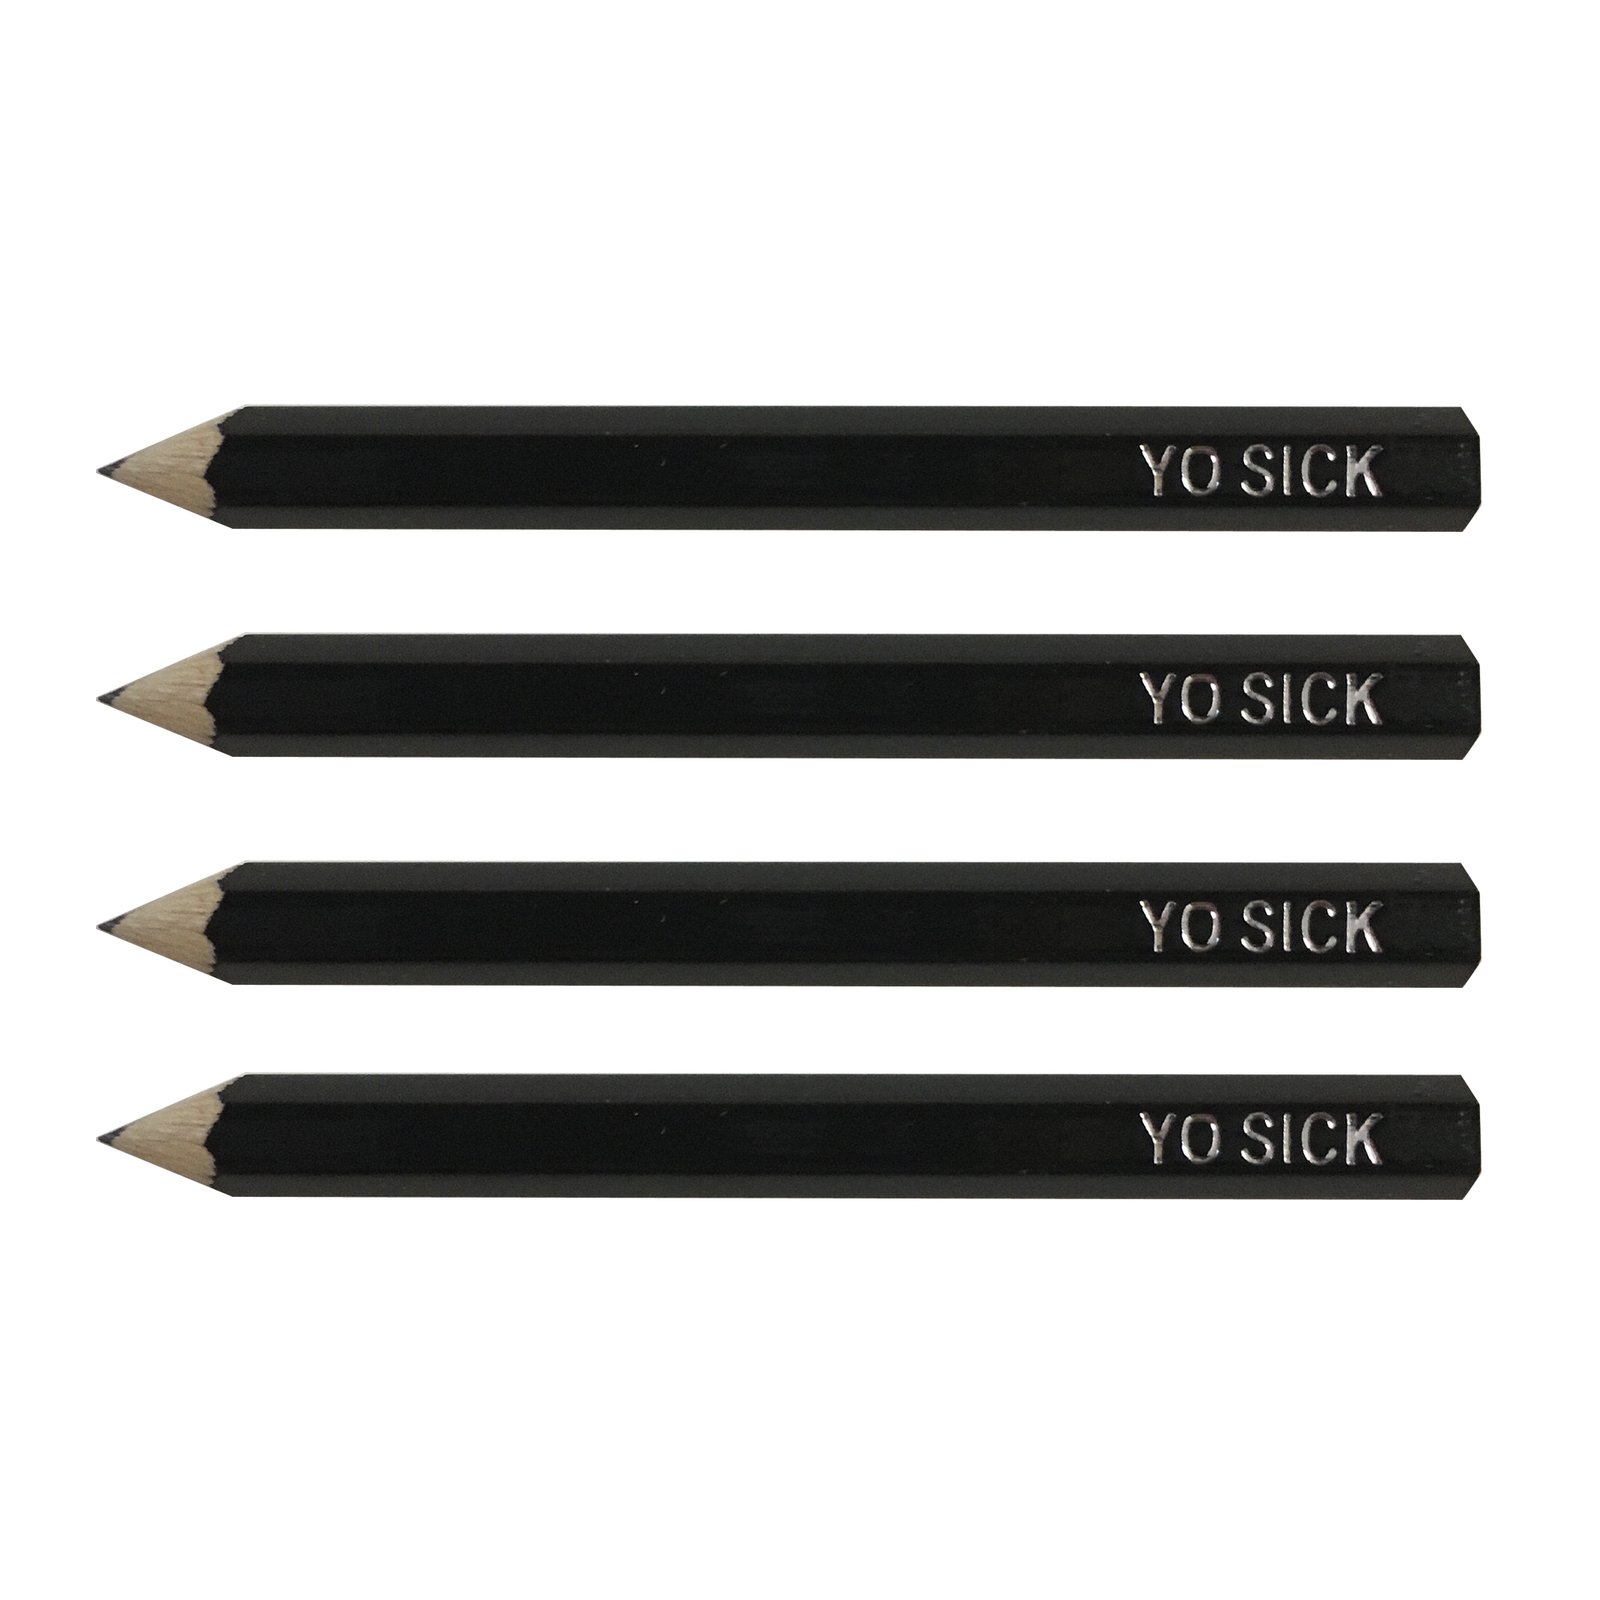 small lead pencils